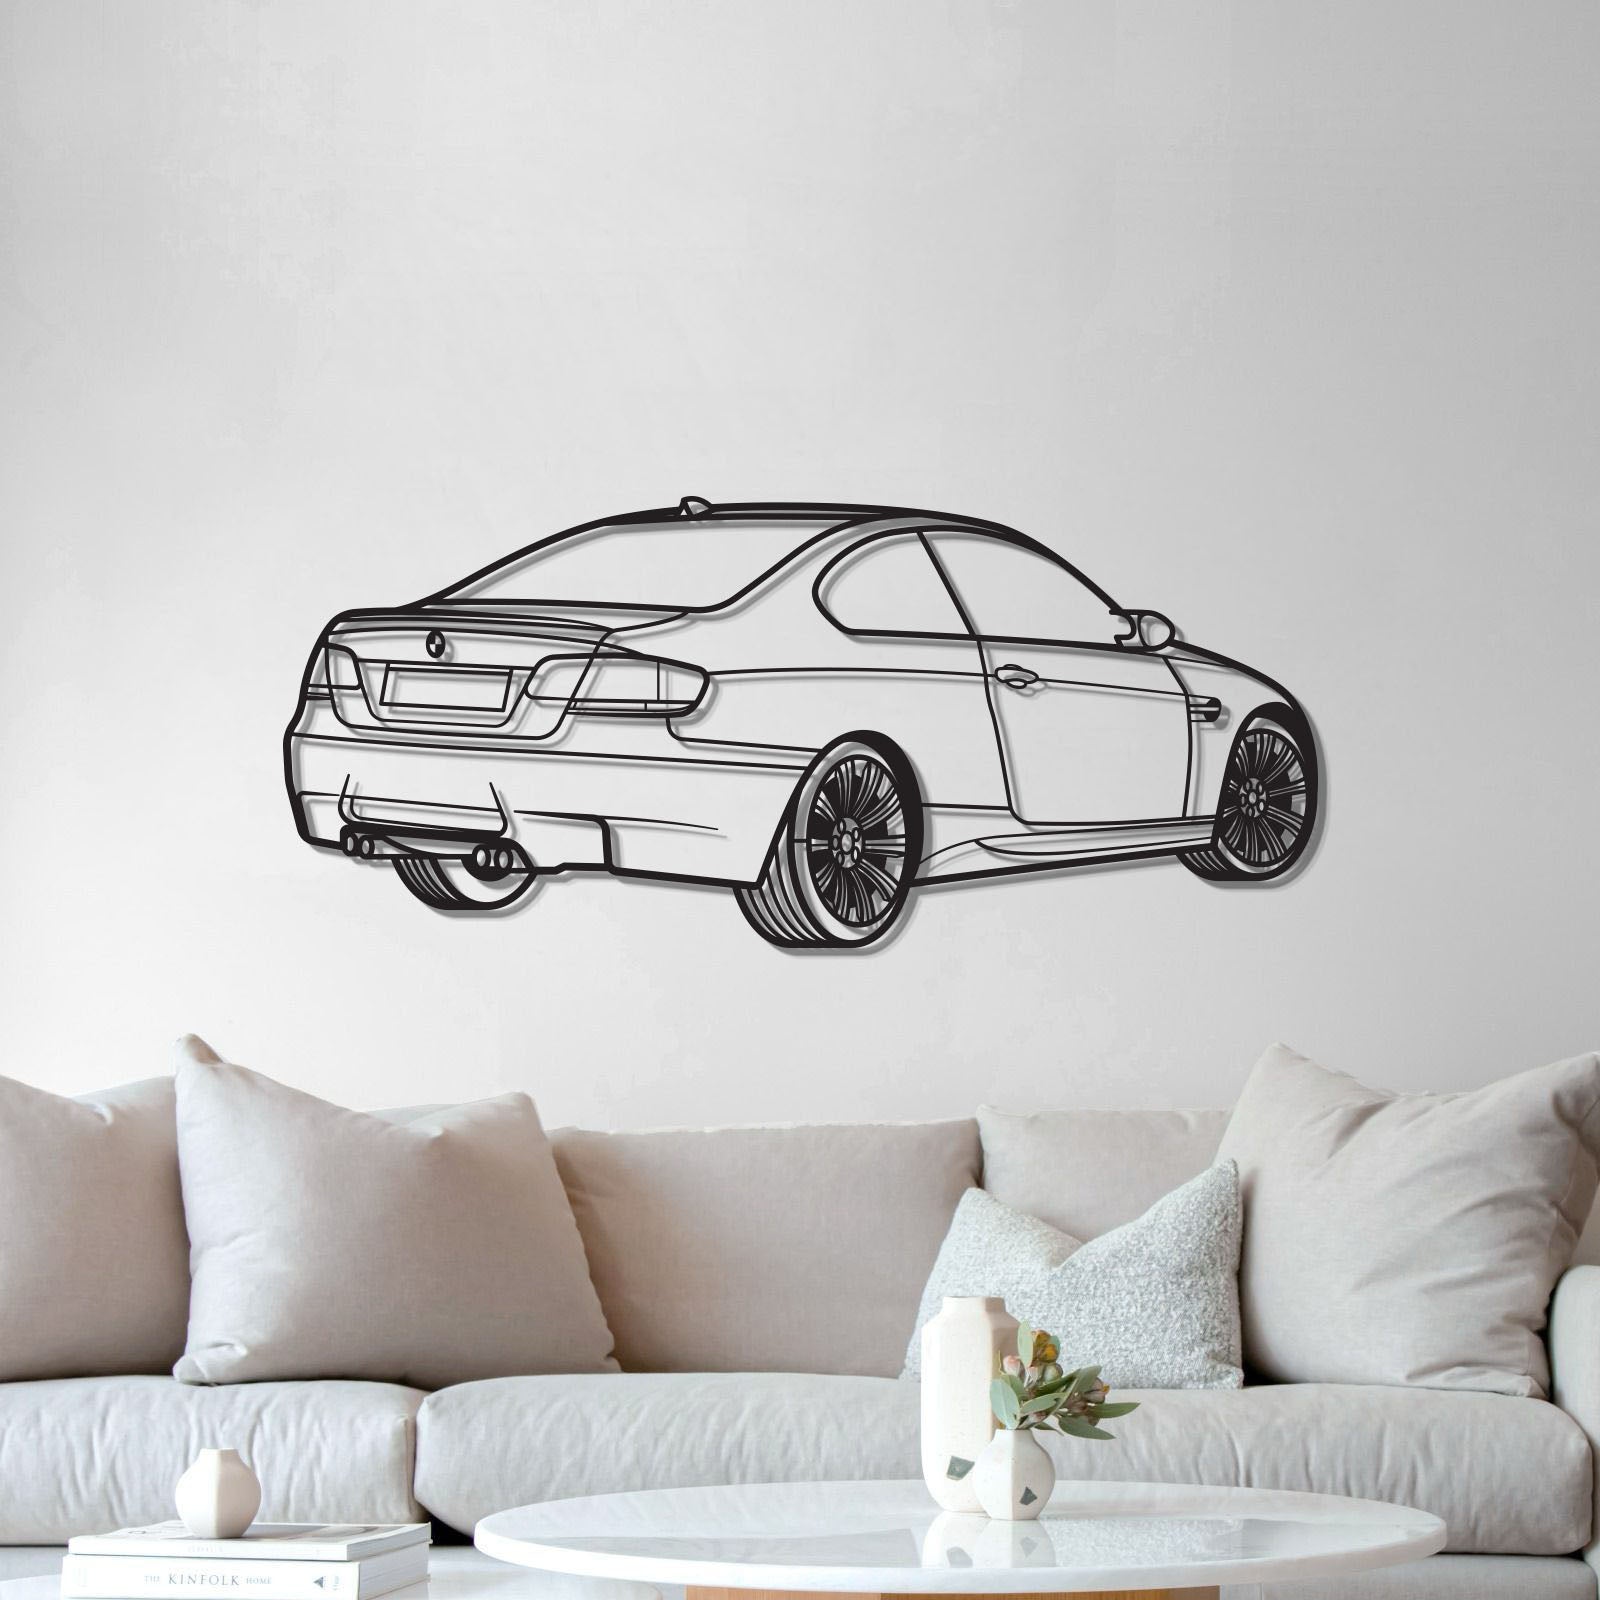 E92 Back Perspective Metal Car Wall Art - MT1300